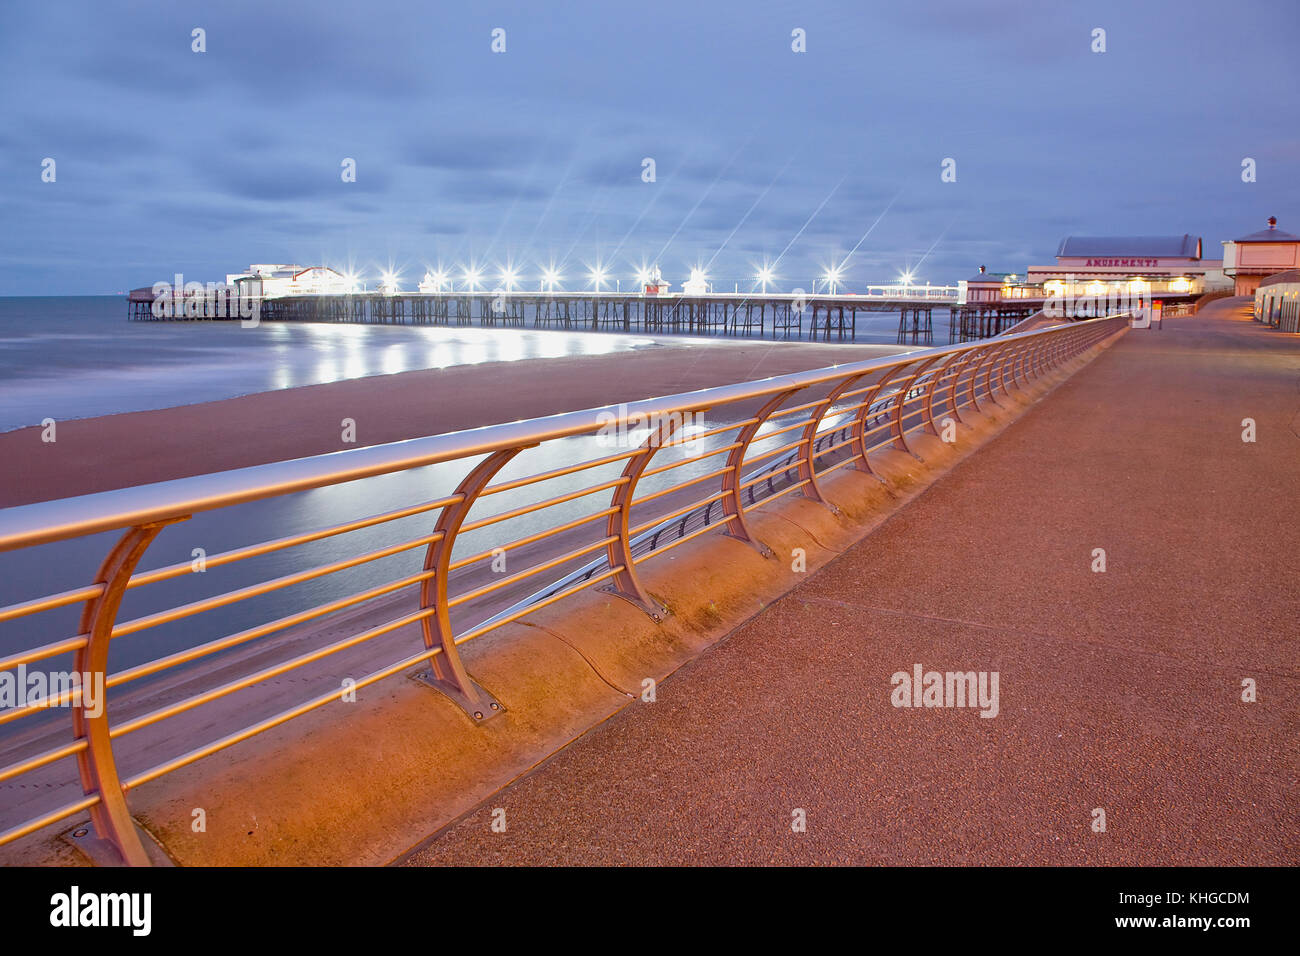 Inghilterra, lancashire, Blackpool, la passeggiata sul lungomare con North Pier accesa al crepuscolo. Foto Stock